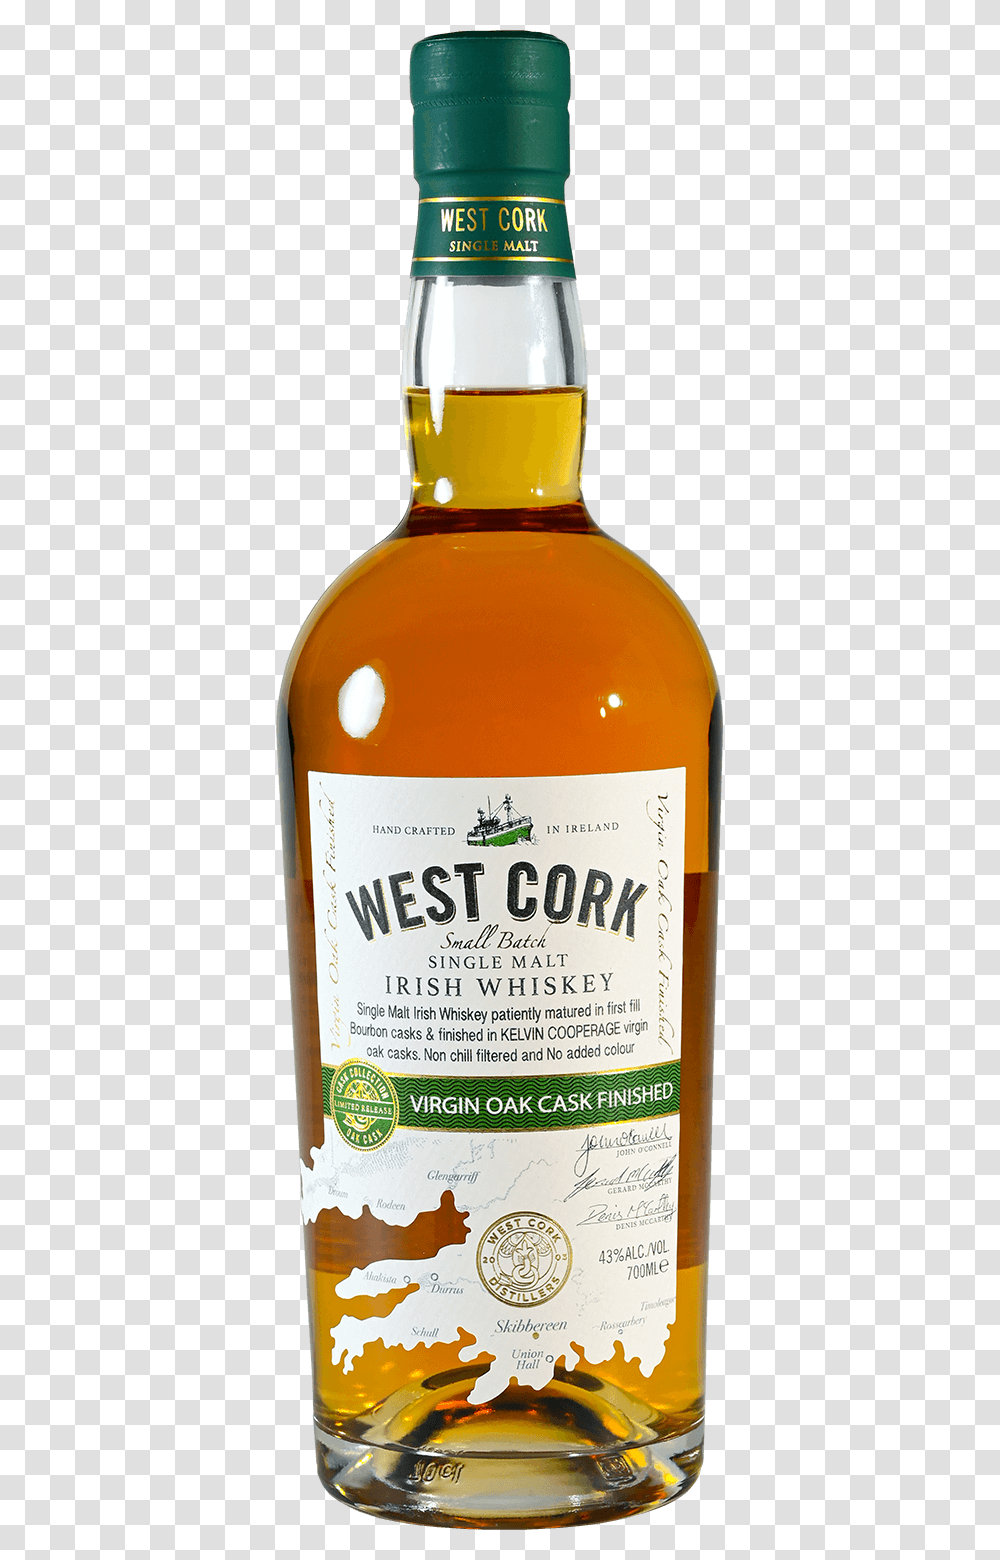 Virgin Oak Cask New West Cork Whiskey, Liquor, Alcohol, Beverage, Drink Transparent Png